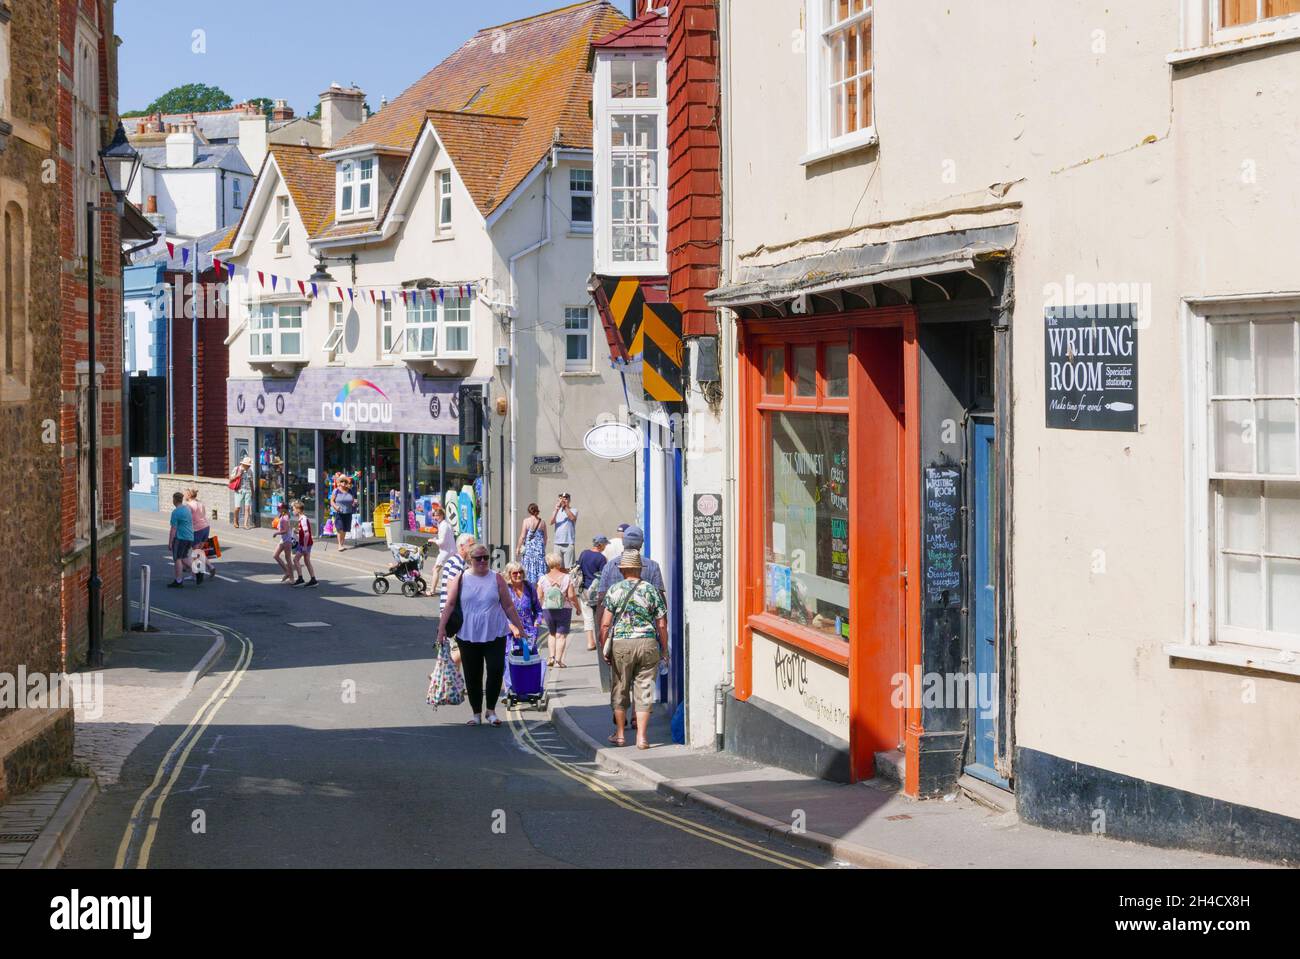 Personnes transportant des magasins et des promenades le long de Bridge Street Centre ville Lyme Regis Dorset Angleterre GB Europe Banque D'Images